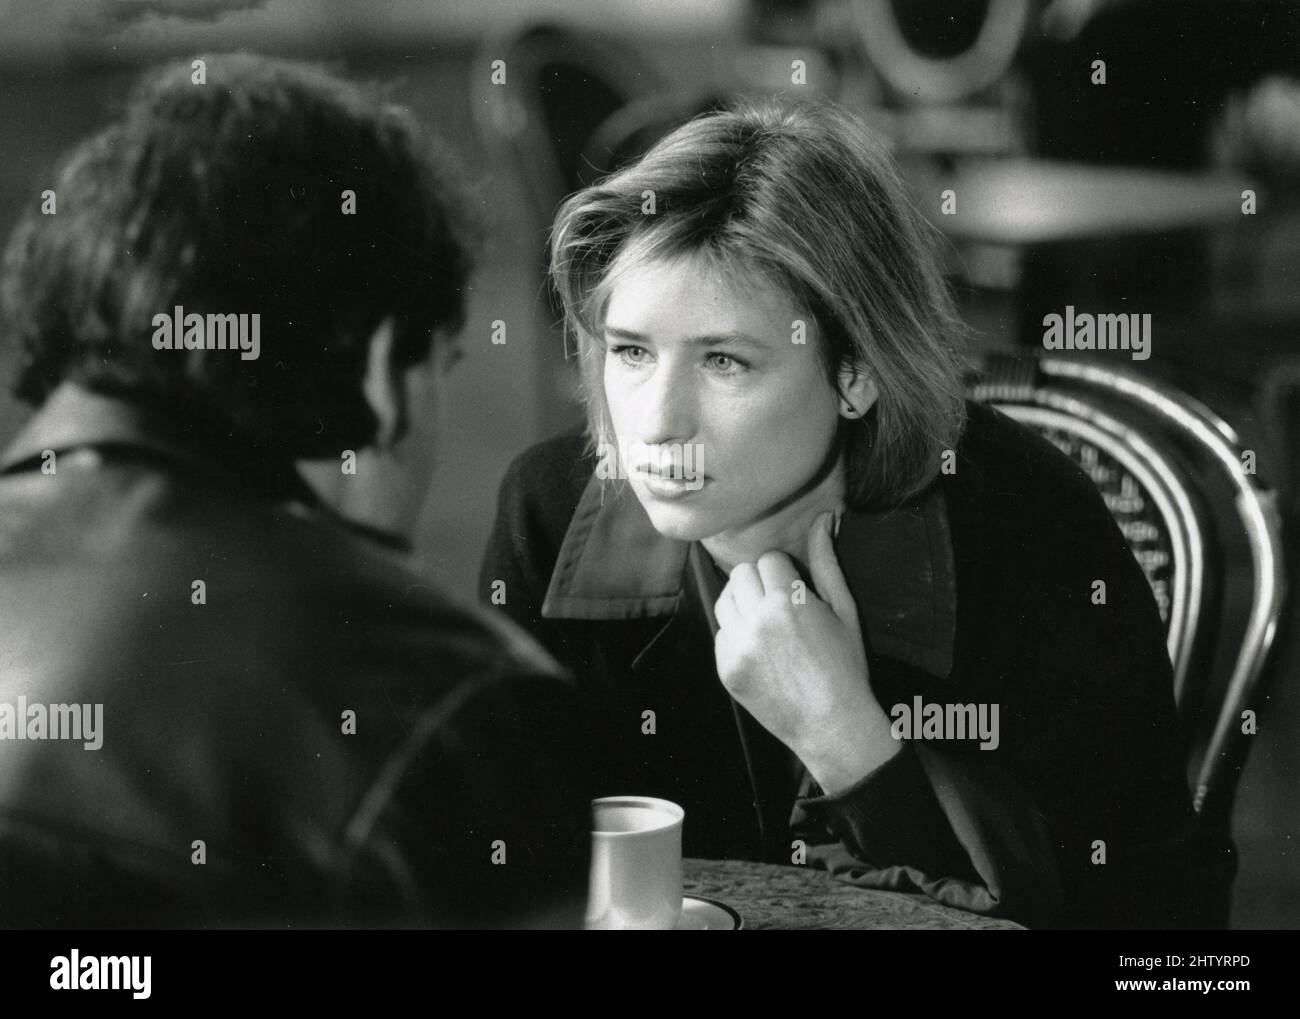 Schauspielerin Corinna Harfouch im Film The Promise, Deutschland 1995 Stockfoto